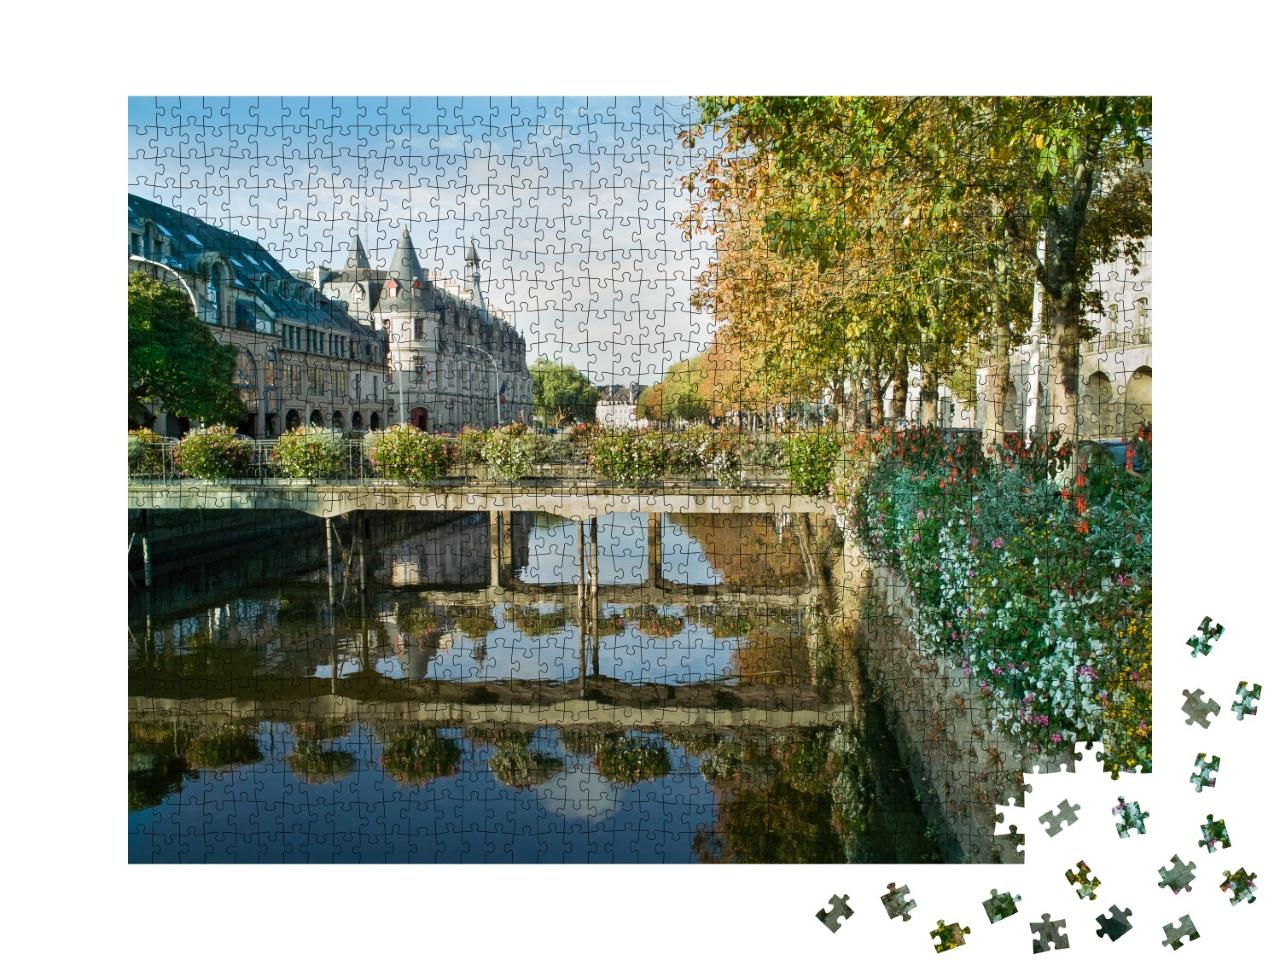 Puzzle de 1000 pièces « Quimper en Bretagne France »